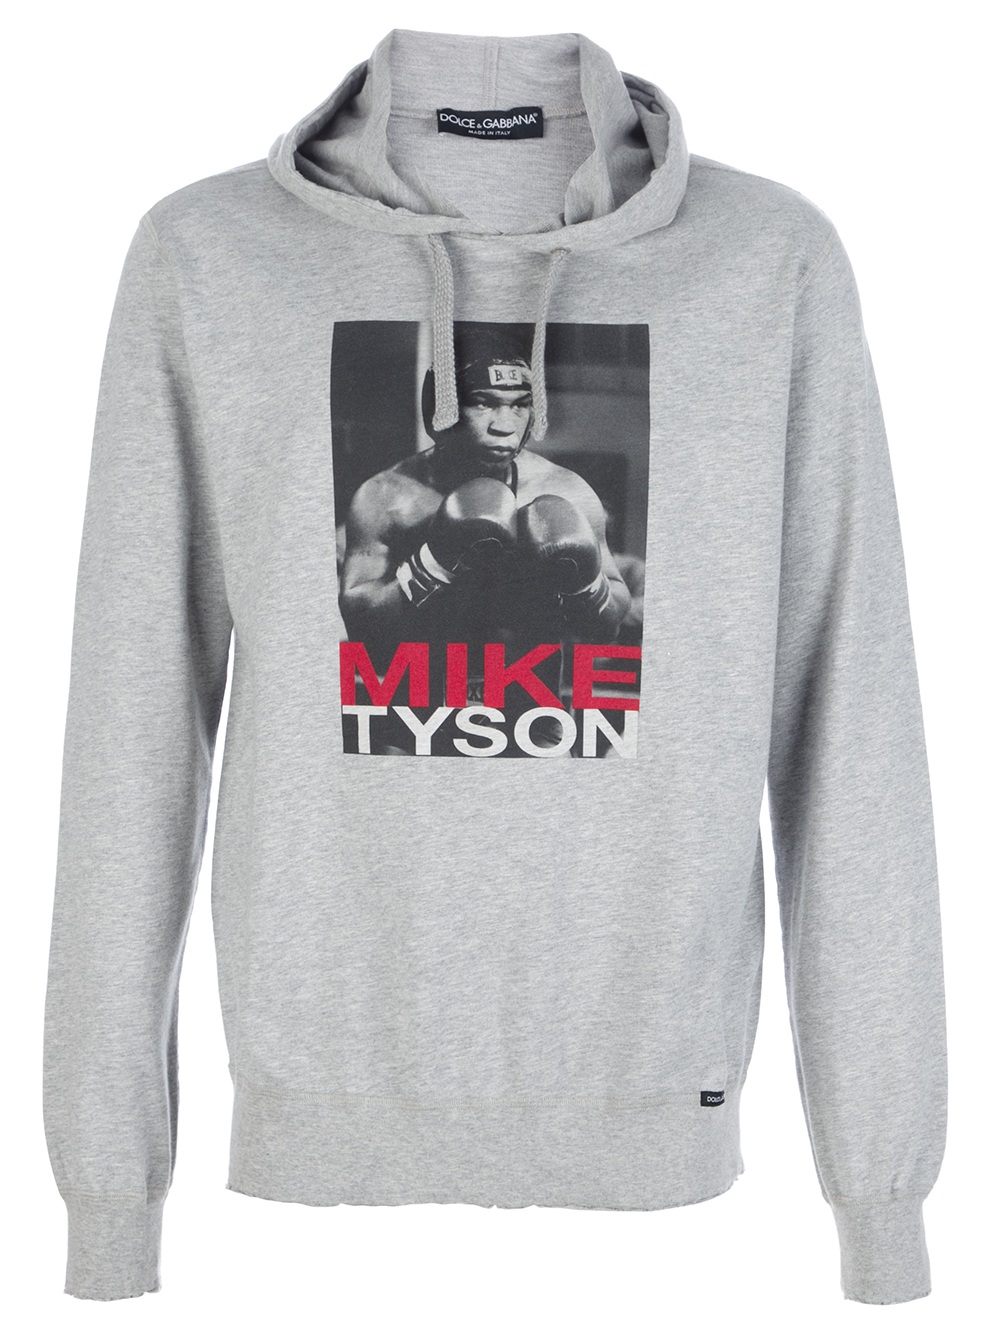 Dolce & Gabbana Mike Tyson Hooded Sweatshirt in Grey (Gray) for Men - Lyst